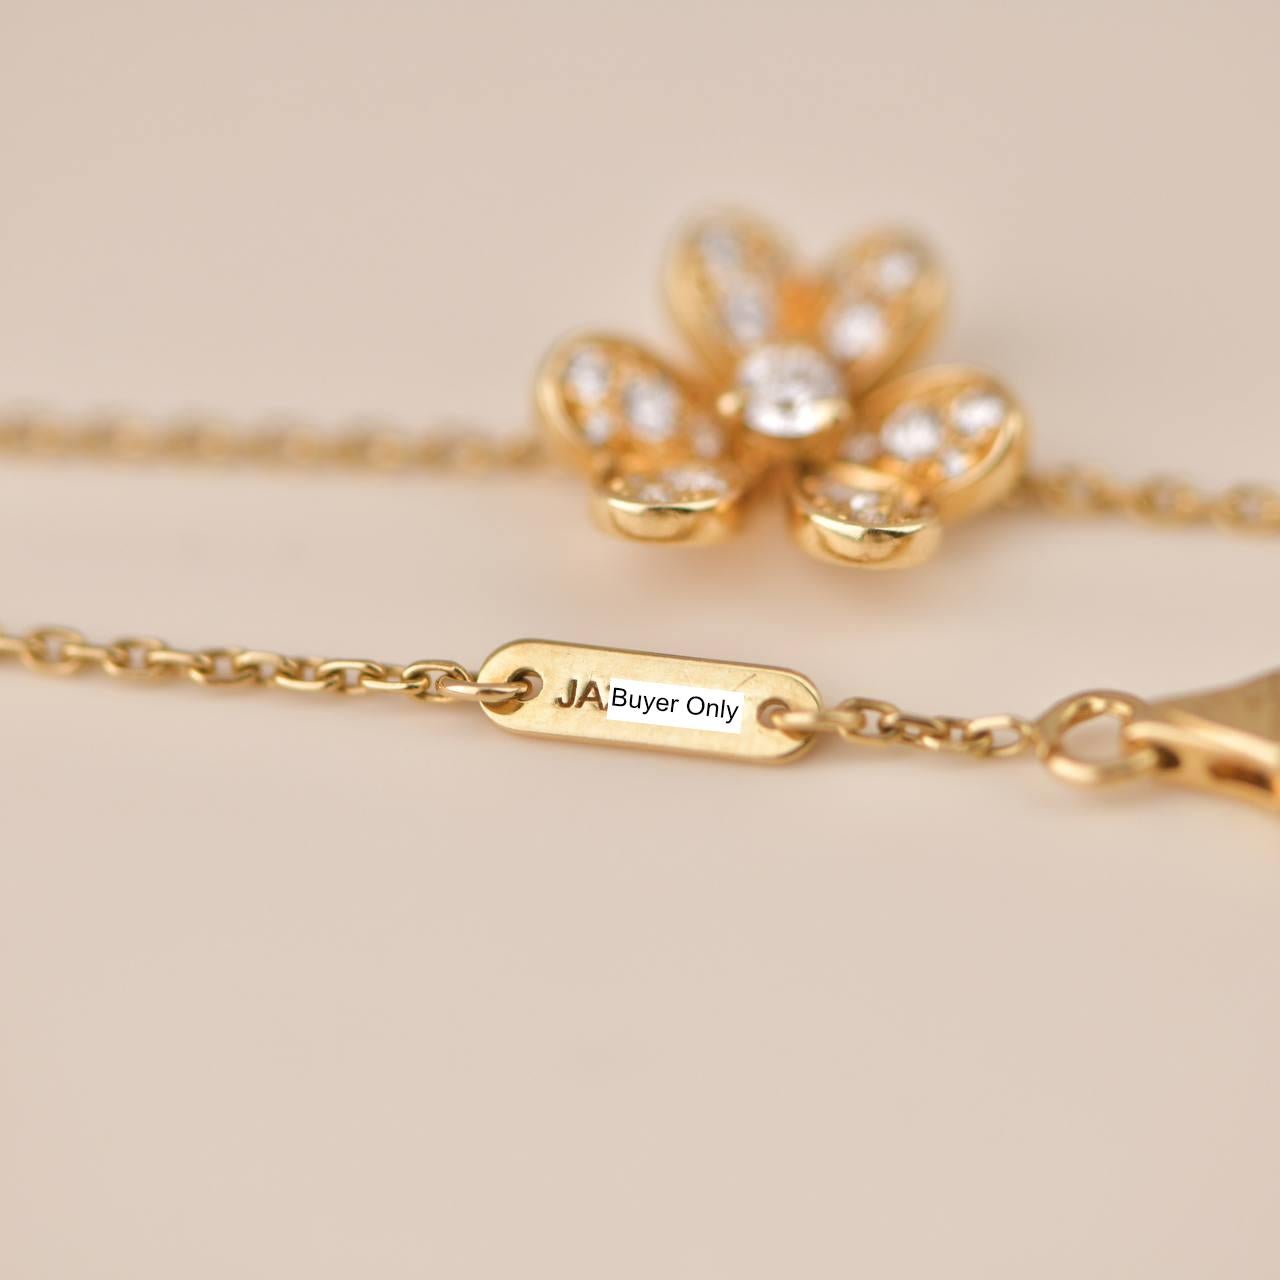 Van Cleef & Arpels Frivole Yellow Gold Diamond Frivole Bracelet For Sale 3